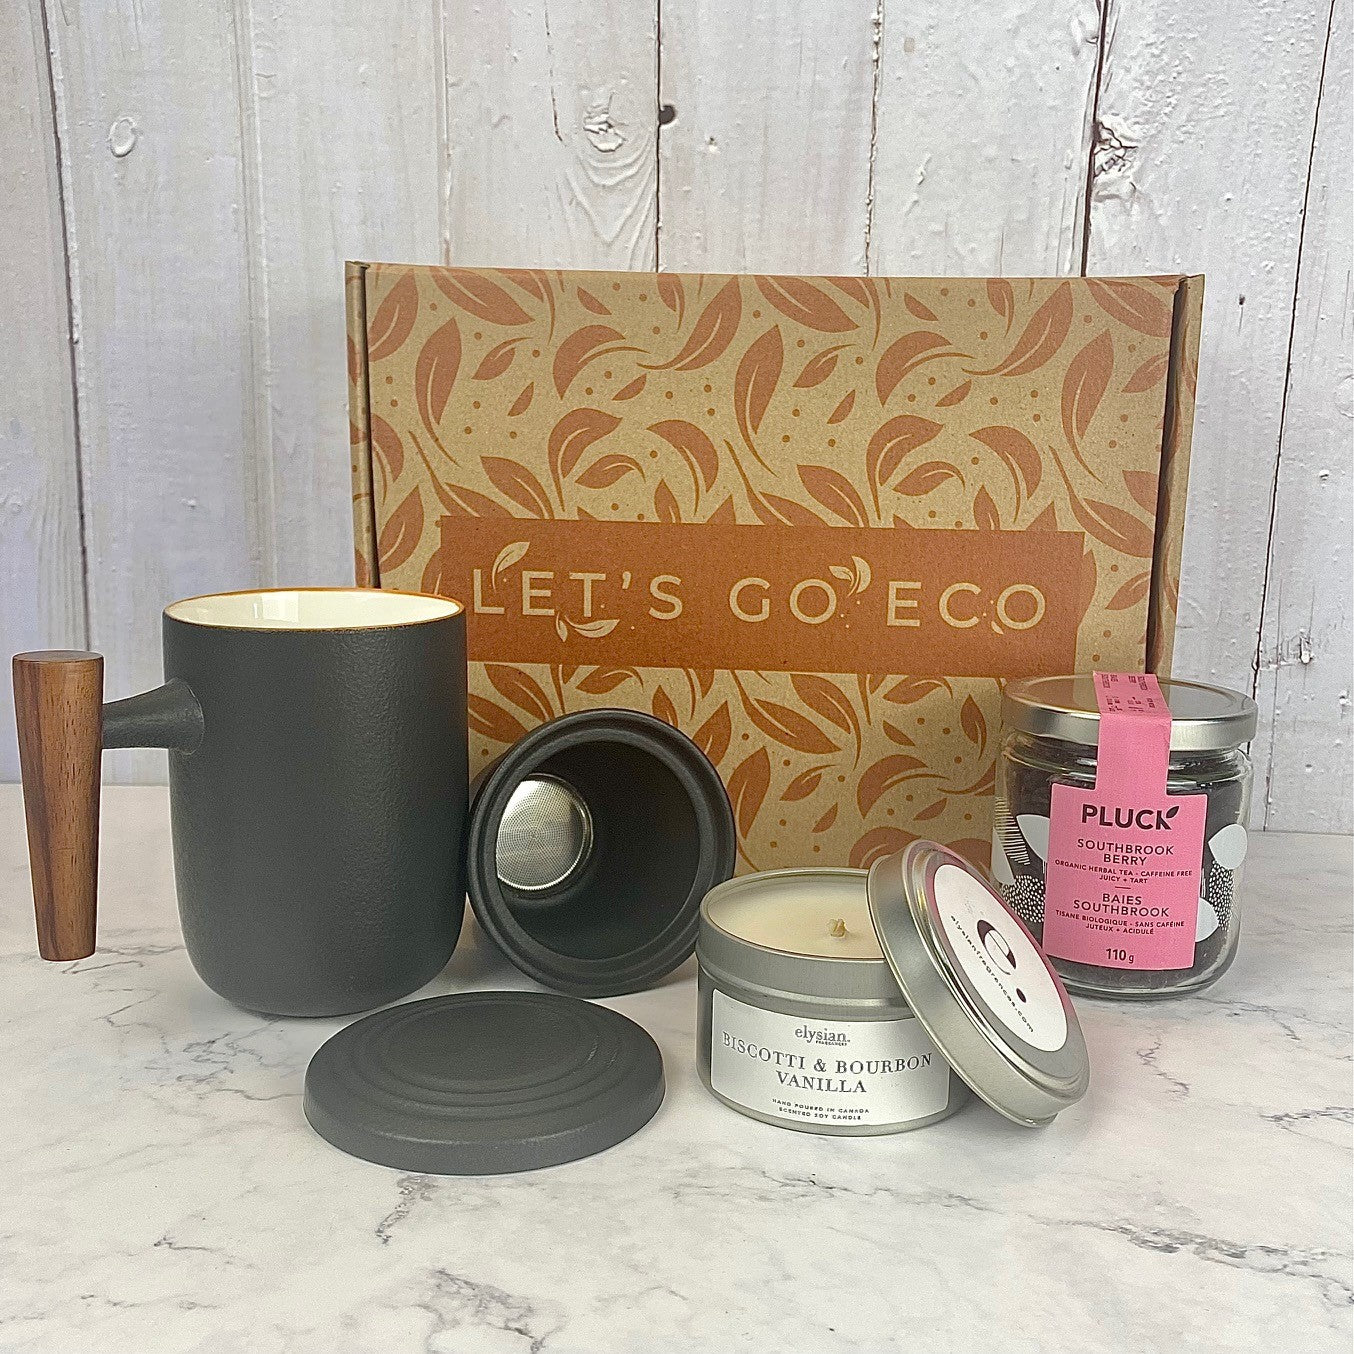 Gift Box "Tea Time" - Ceramic Mug & Tea *Limited Edition*